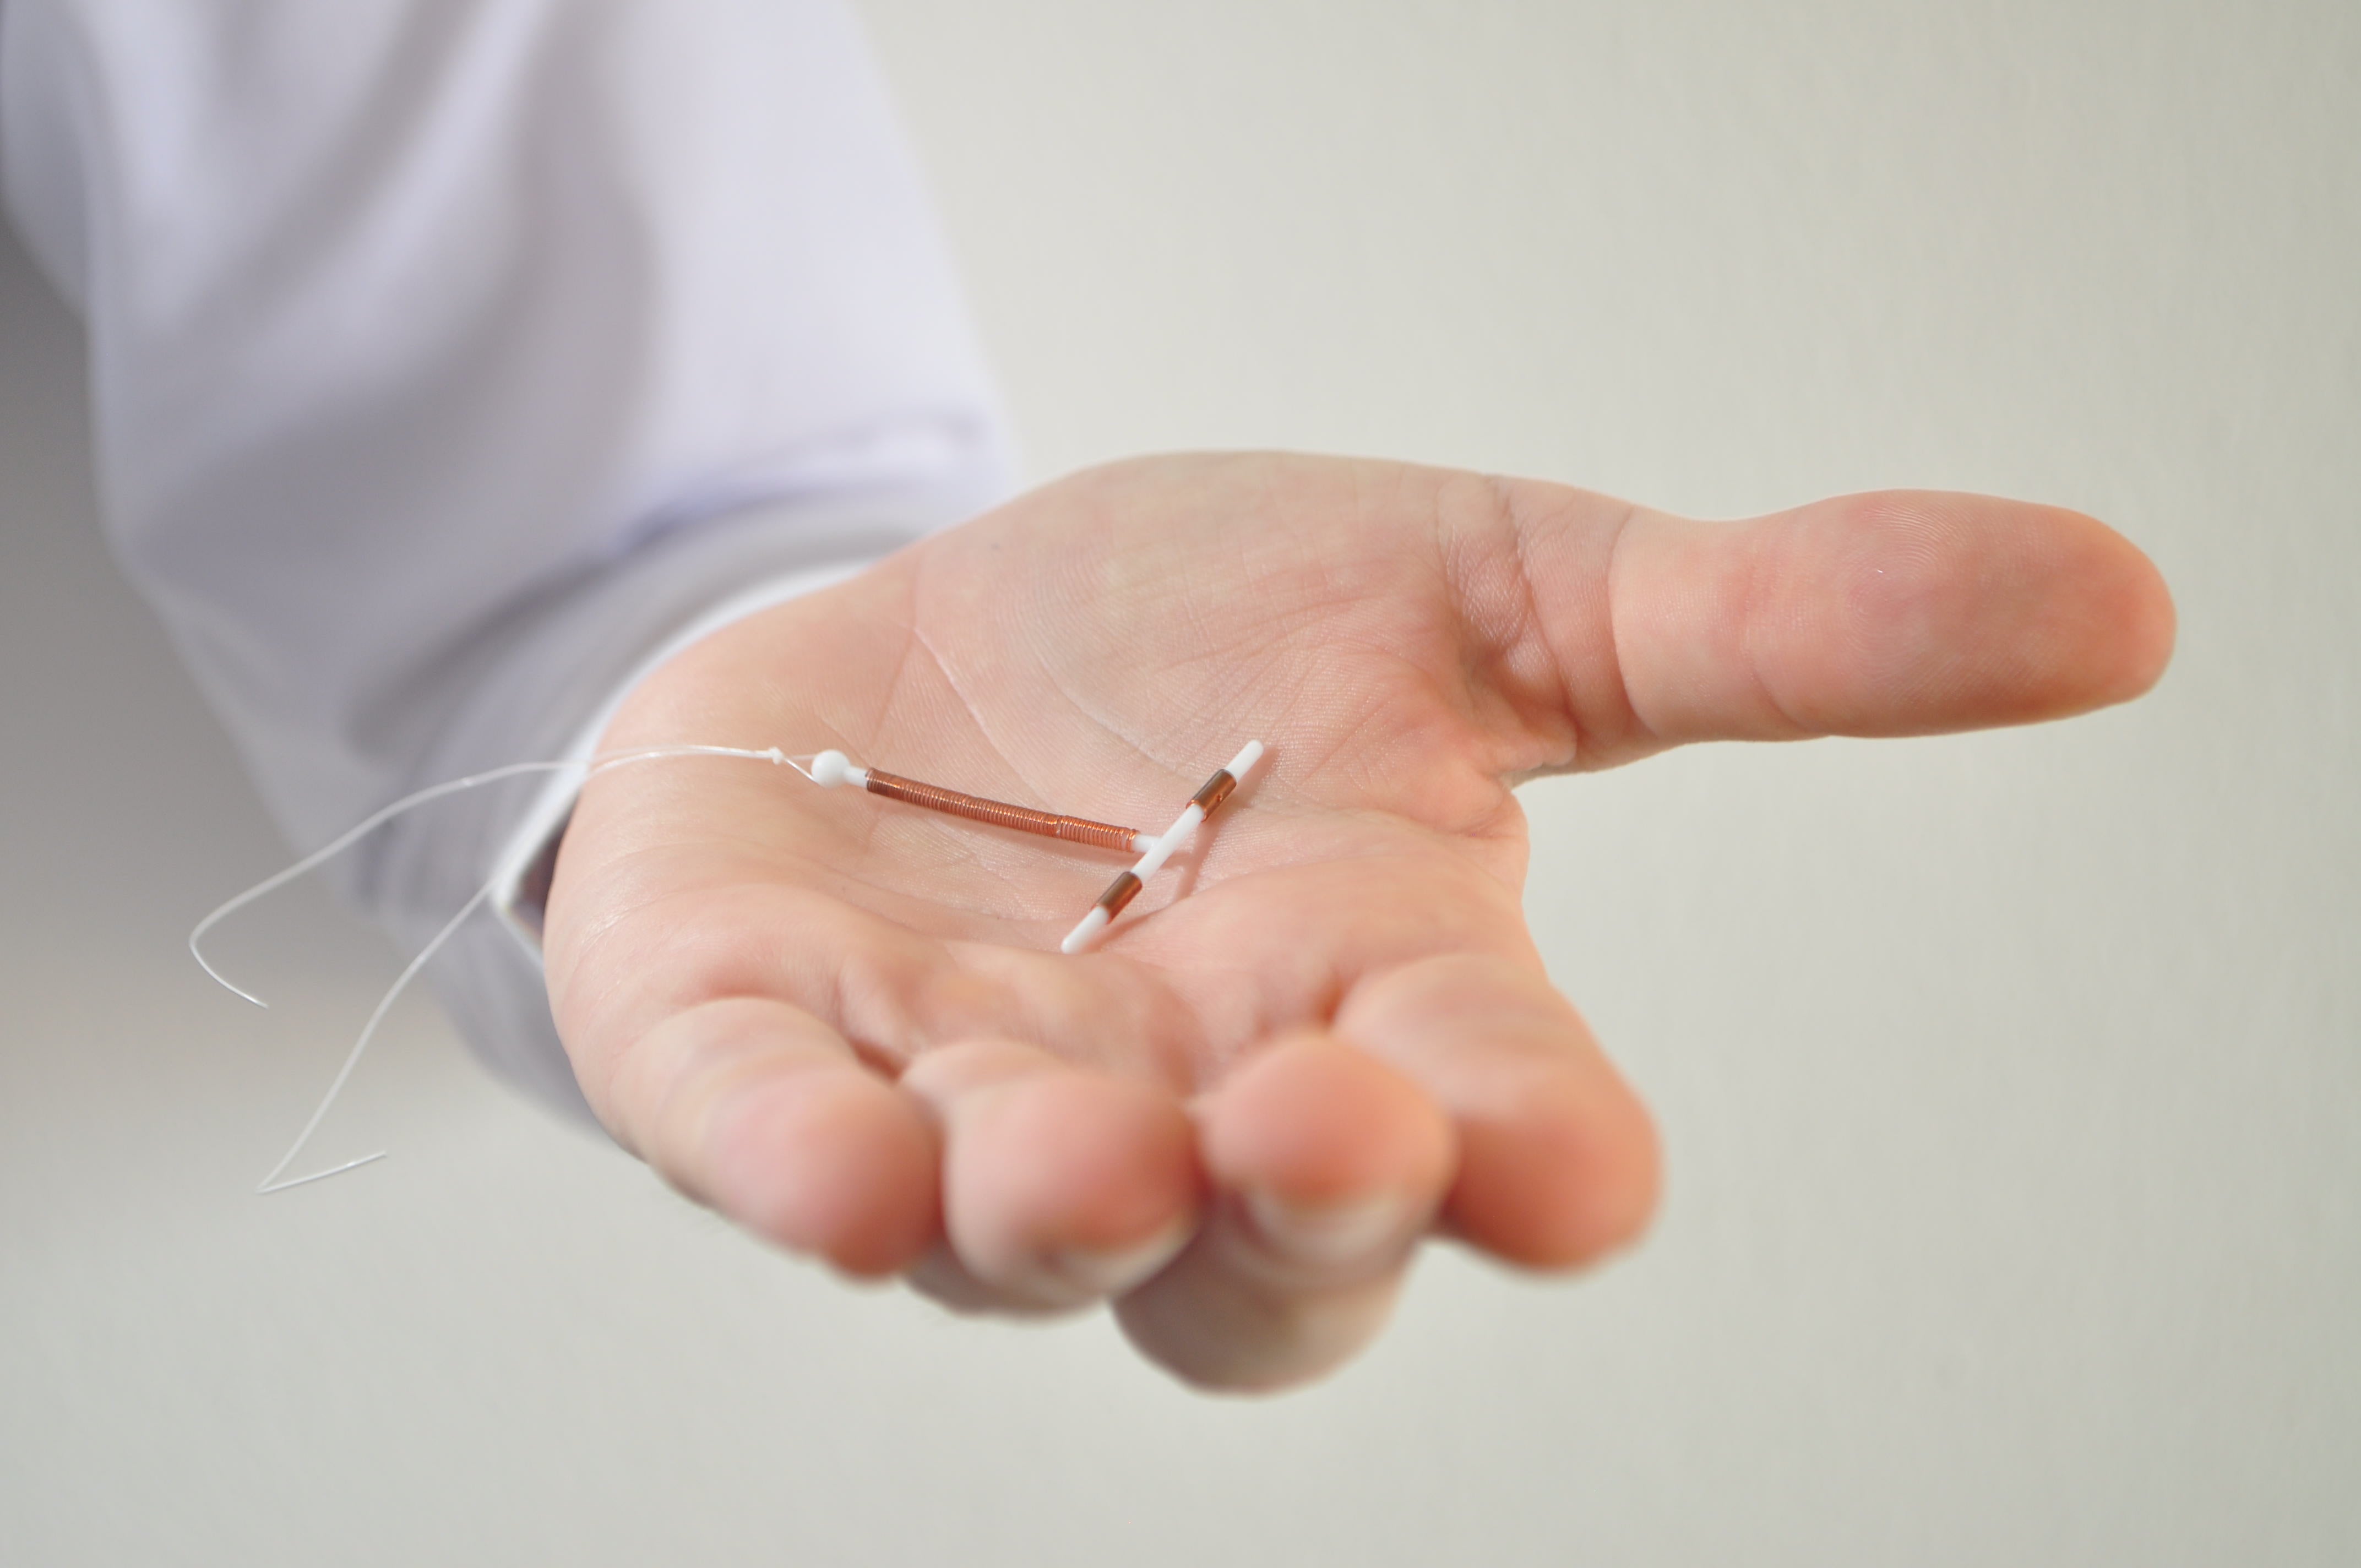 An IUD birth control copper coil device